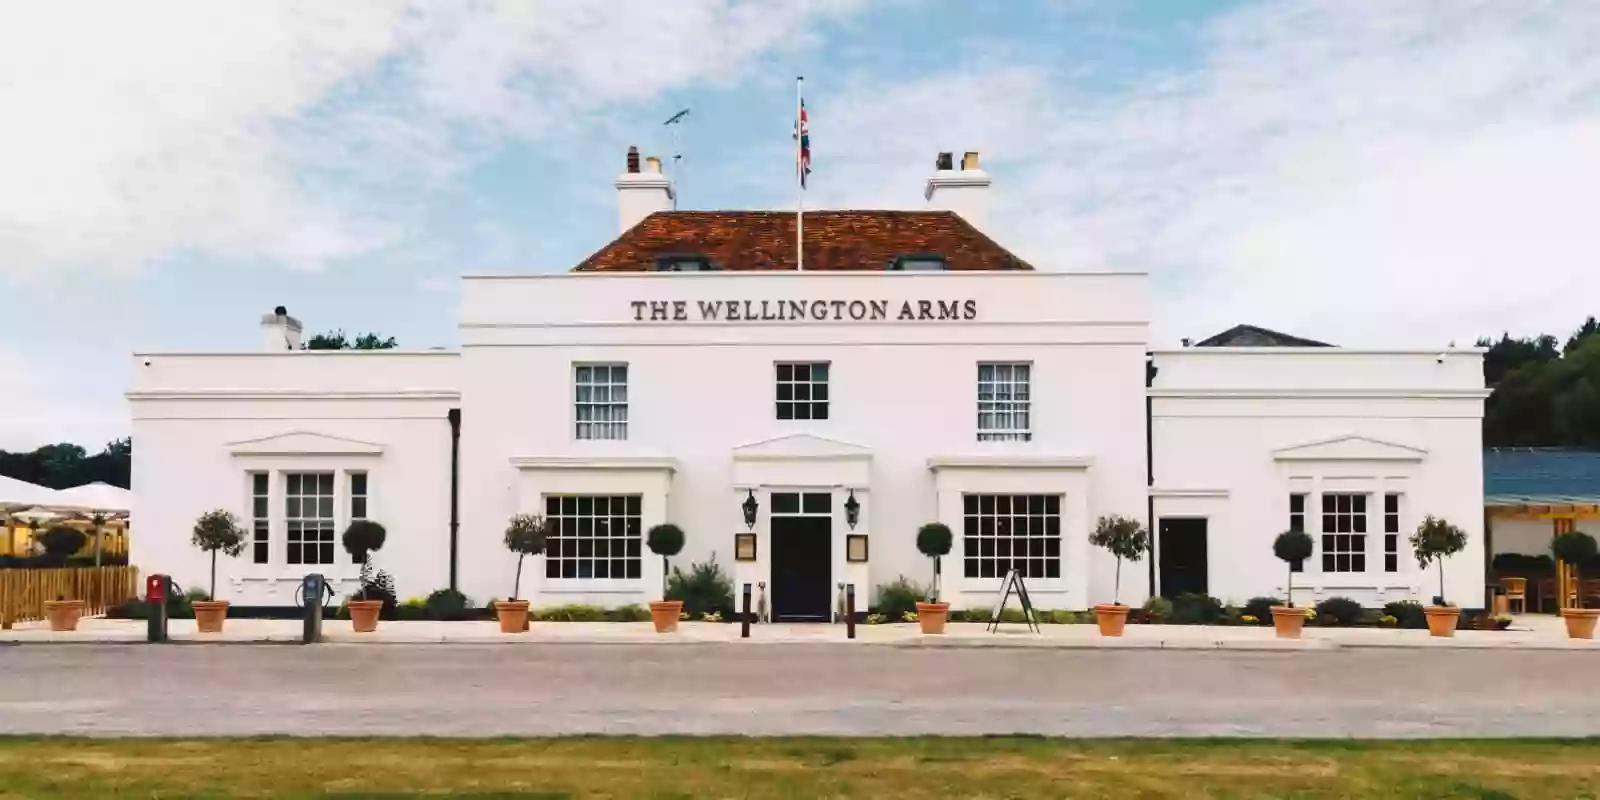 The Wellington Arms